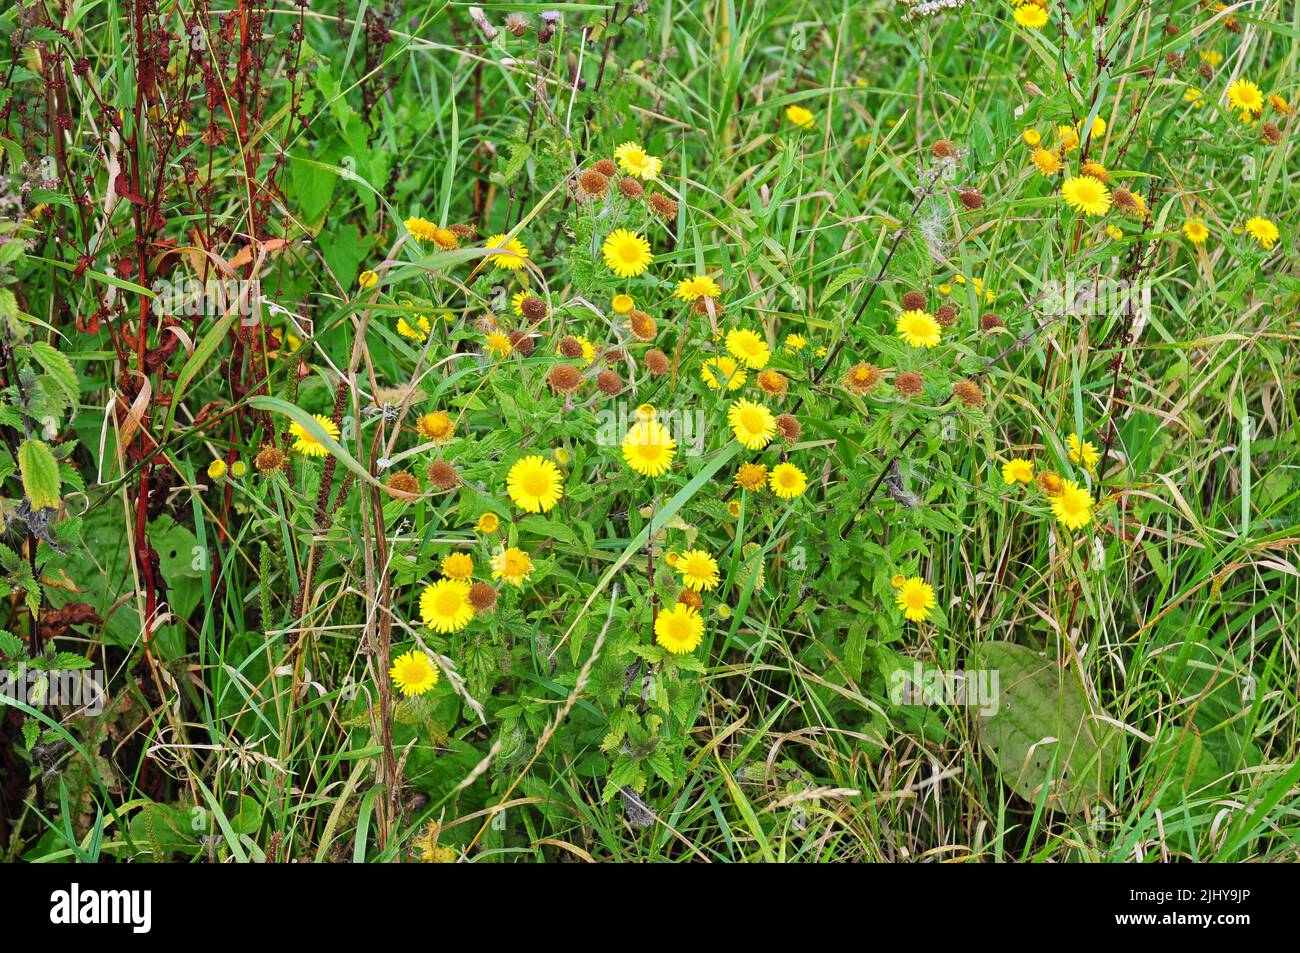 Fleabane flowering in a wildflower meadow. Stock Photo